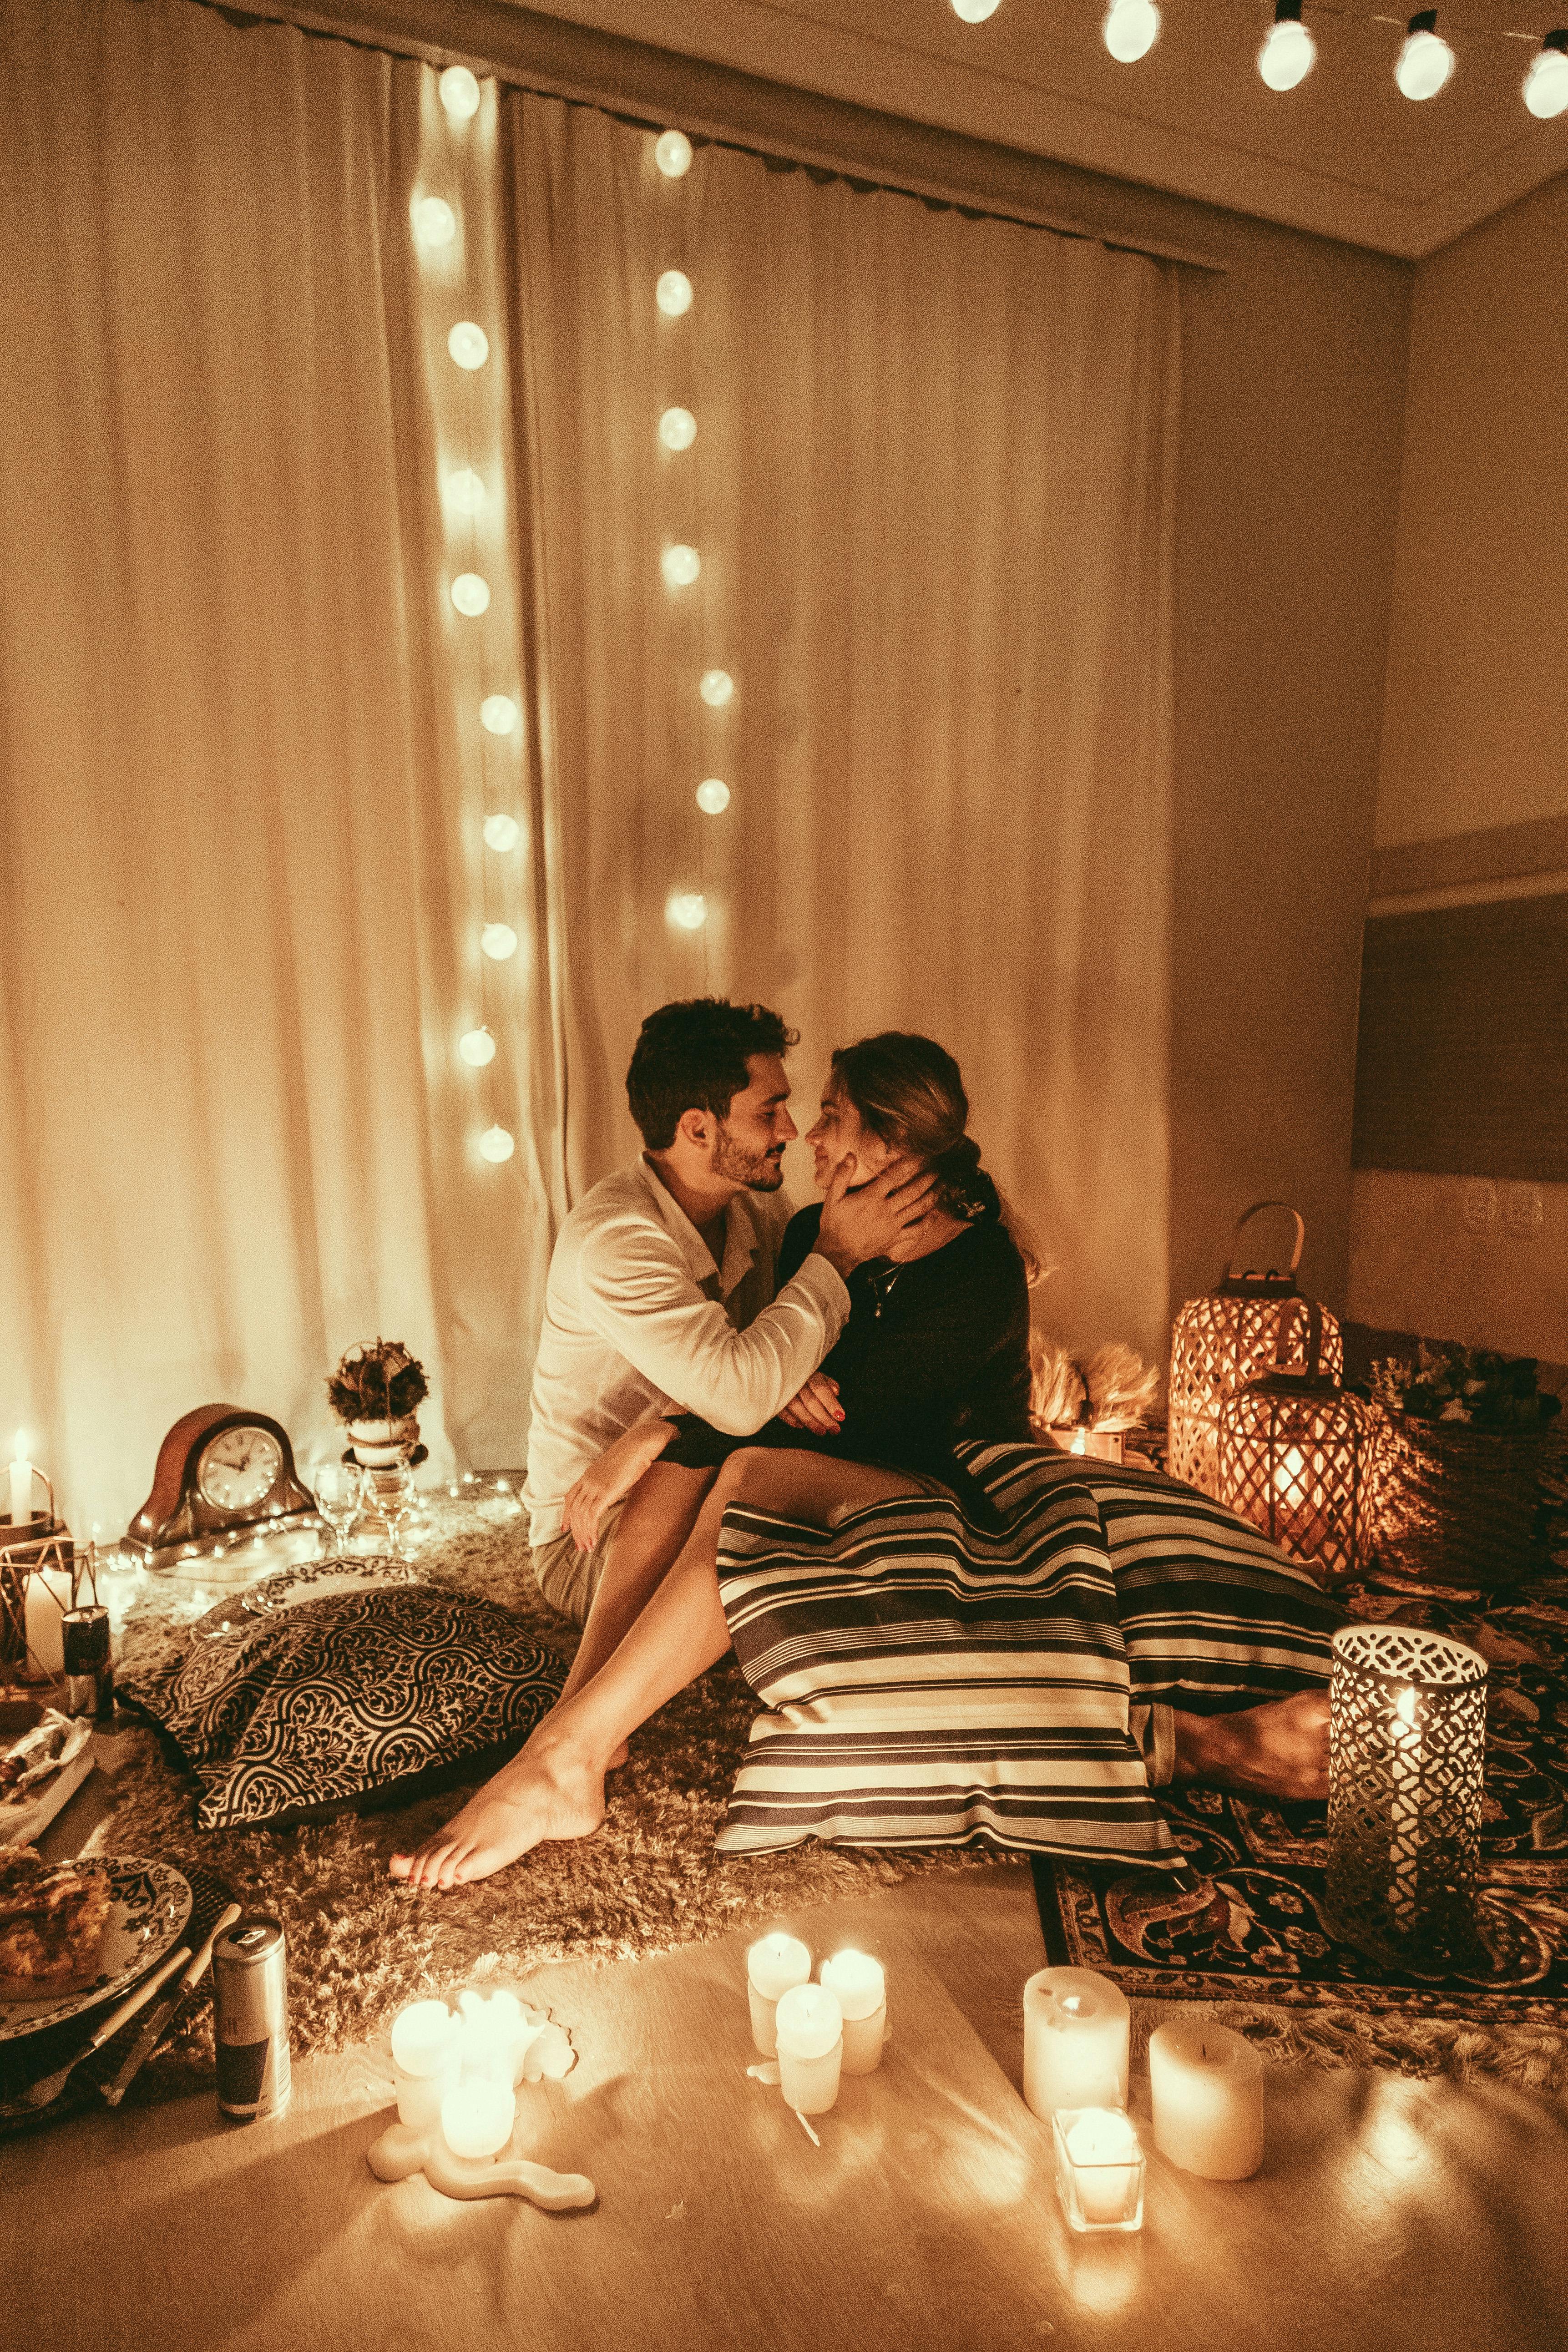 Una pareja feliz pasando una noche romántica | Fuente: Pexels